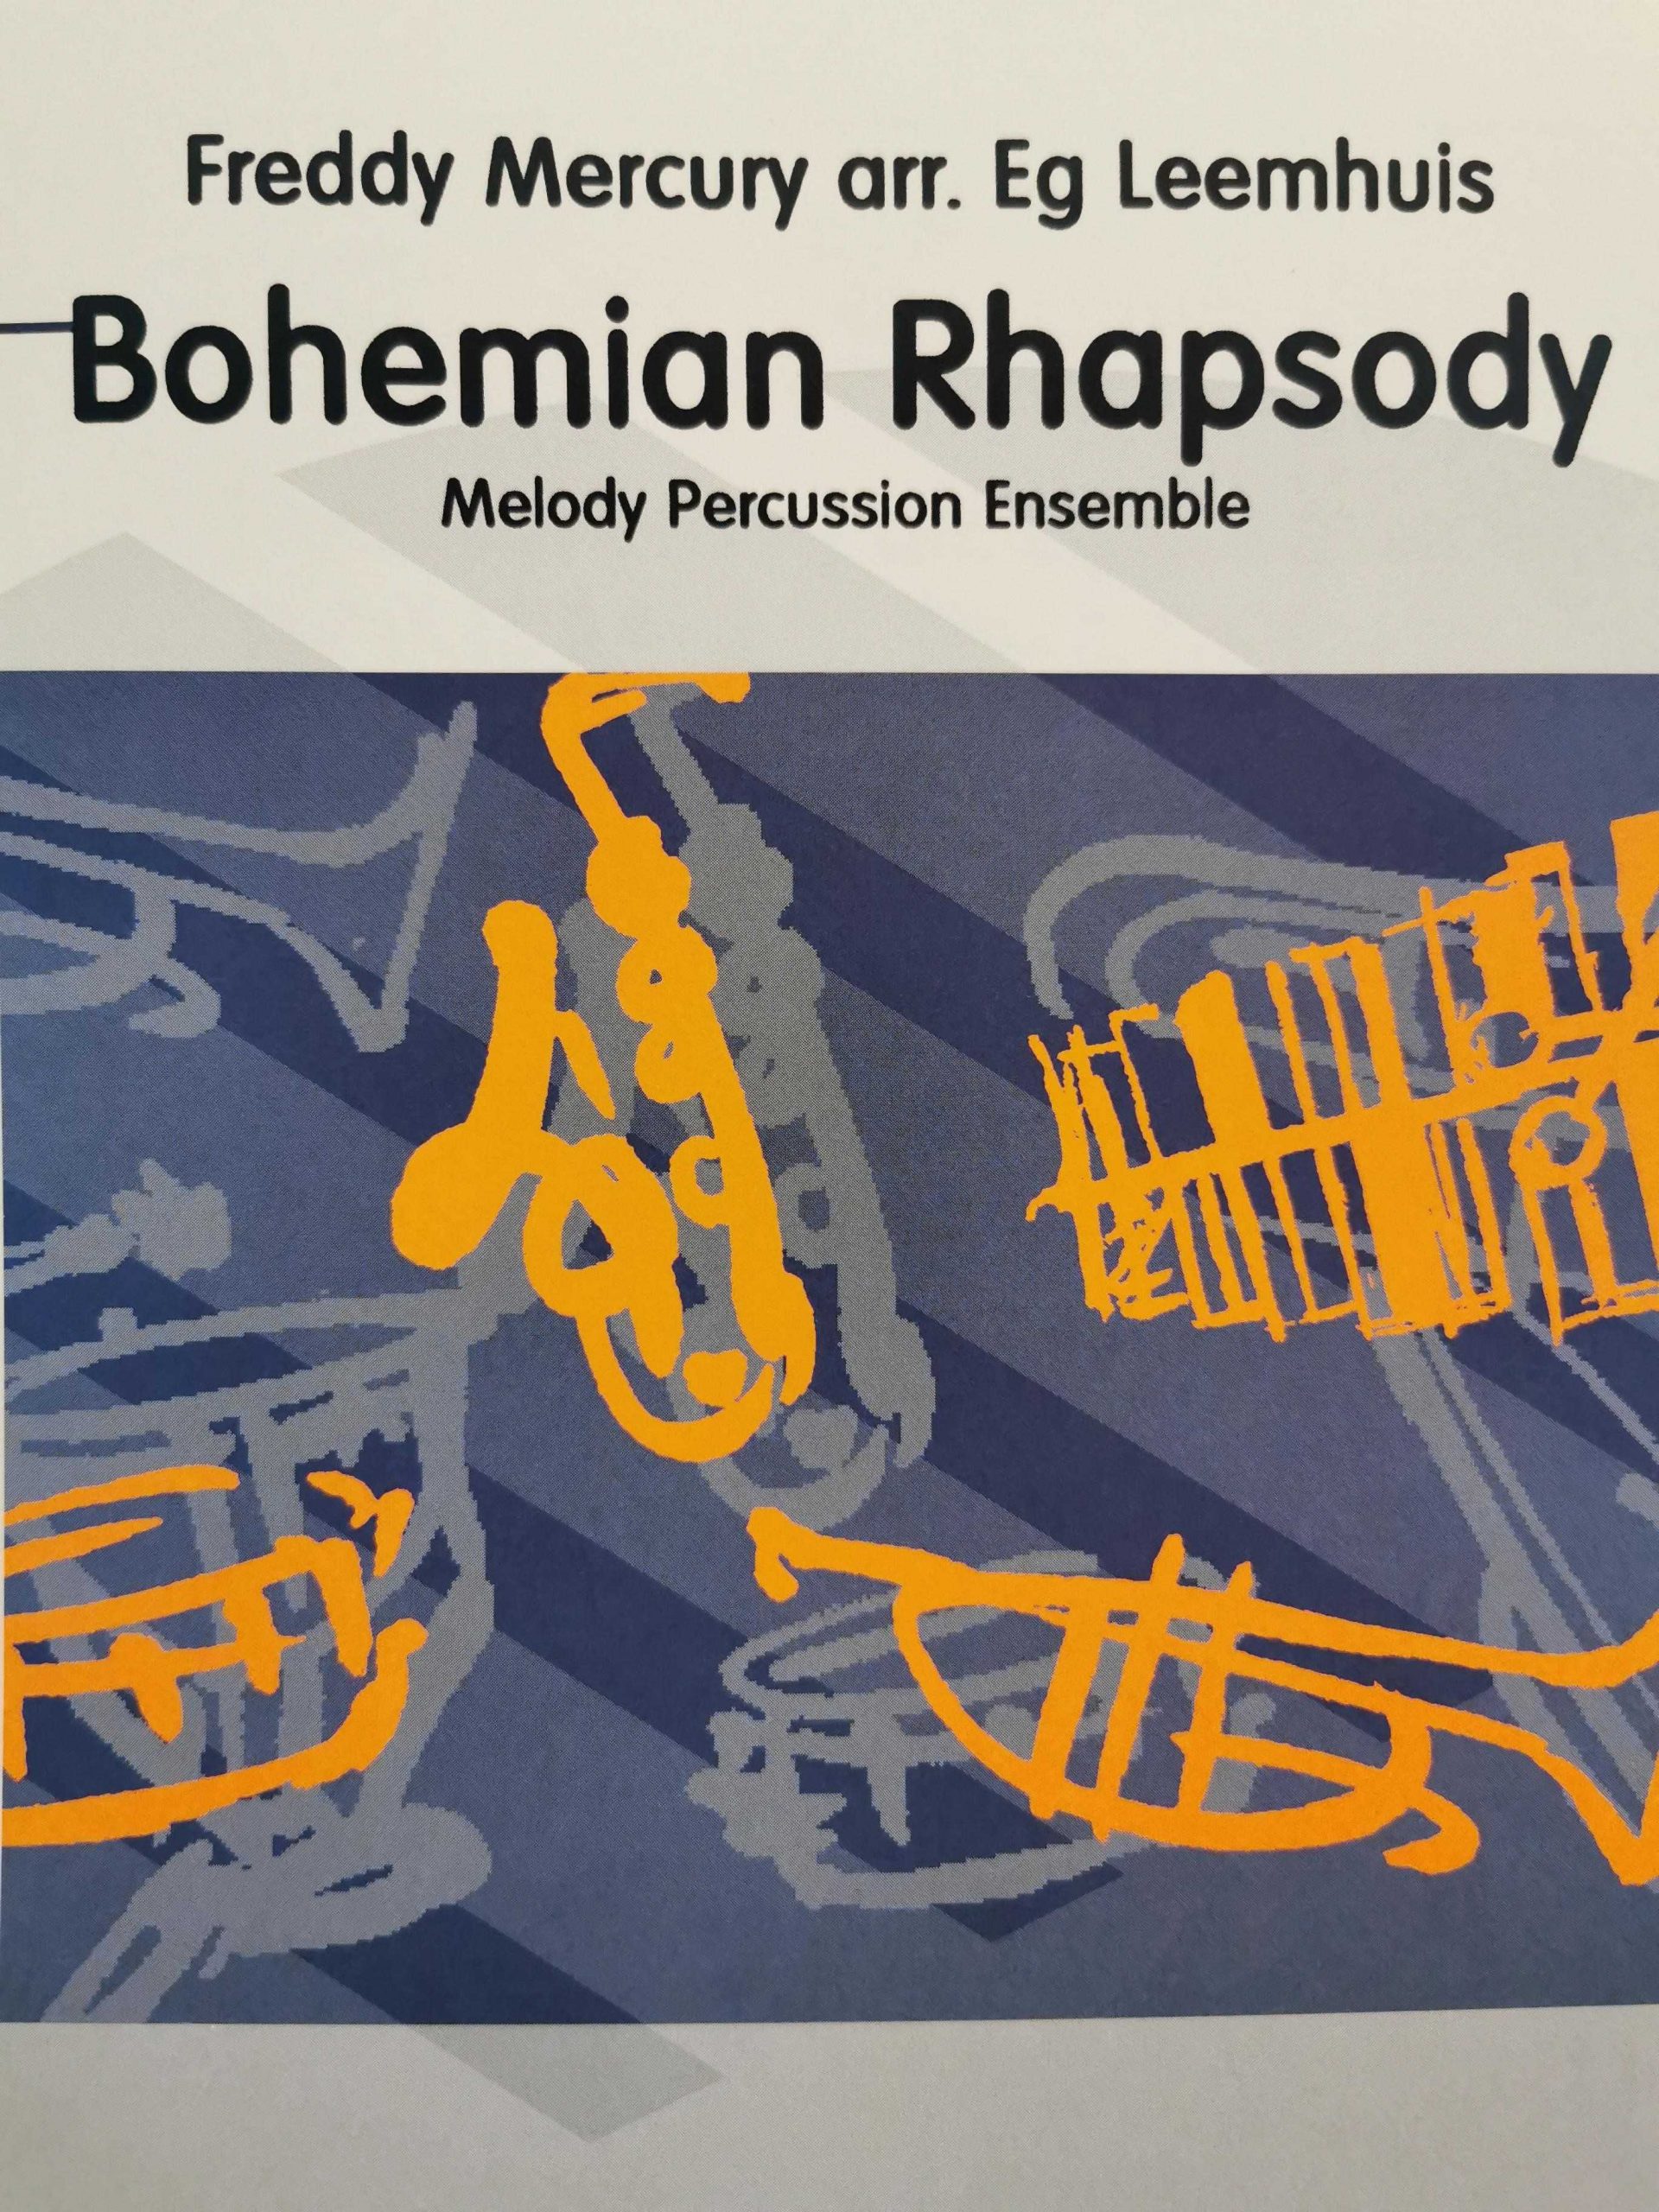 Bohemian Rhapsody by Mercury arr. Eg Leemhuis